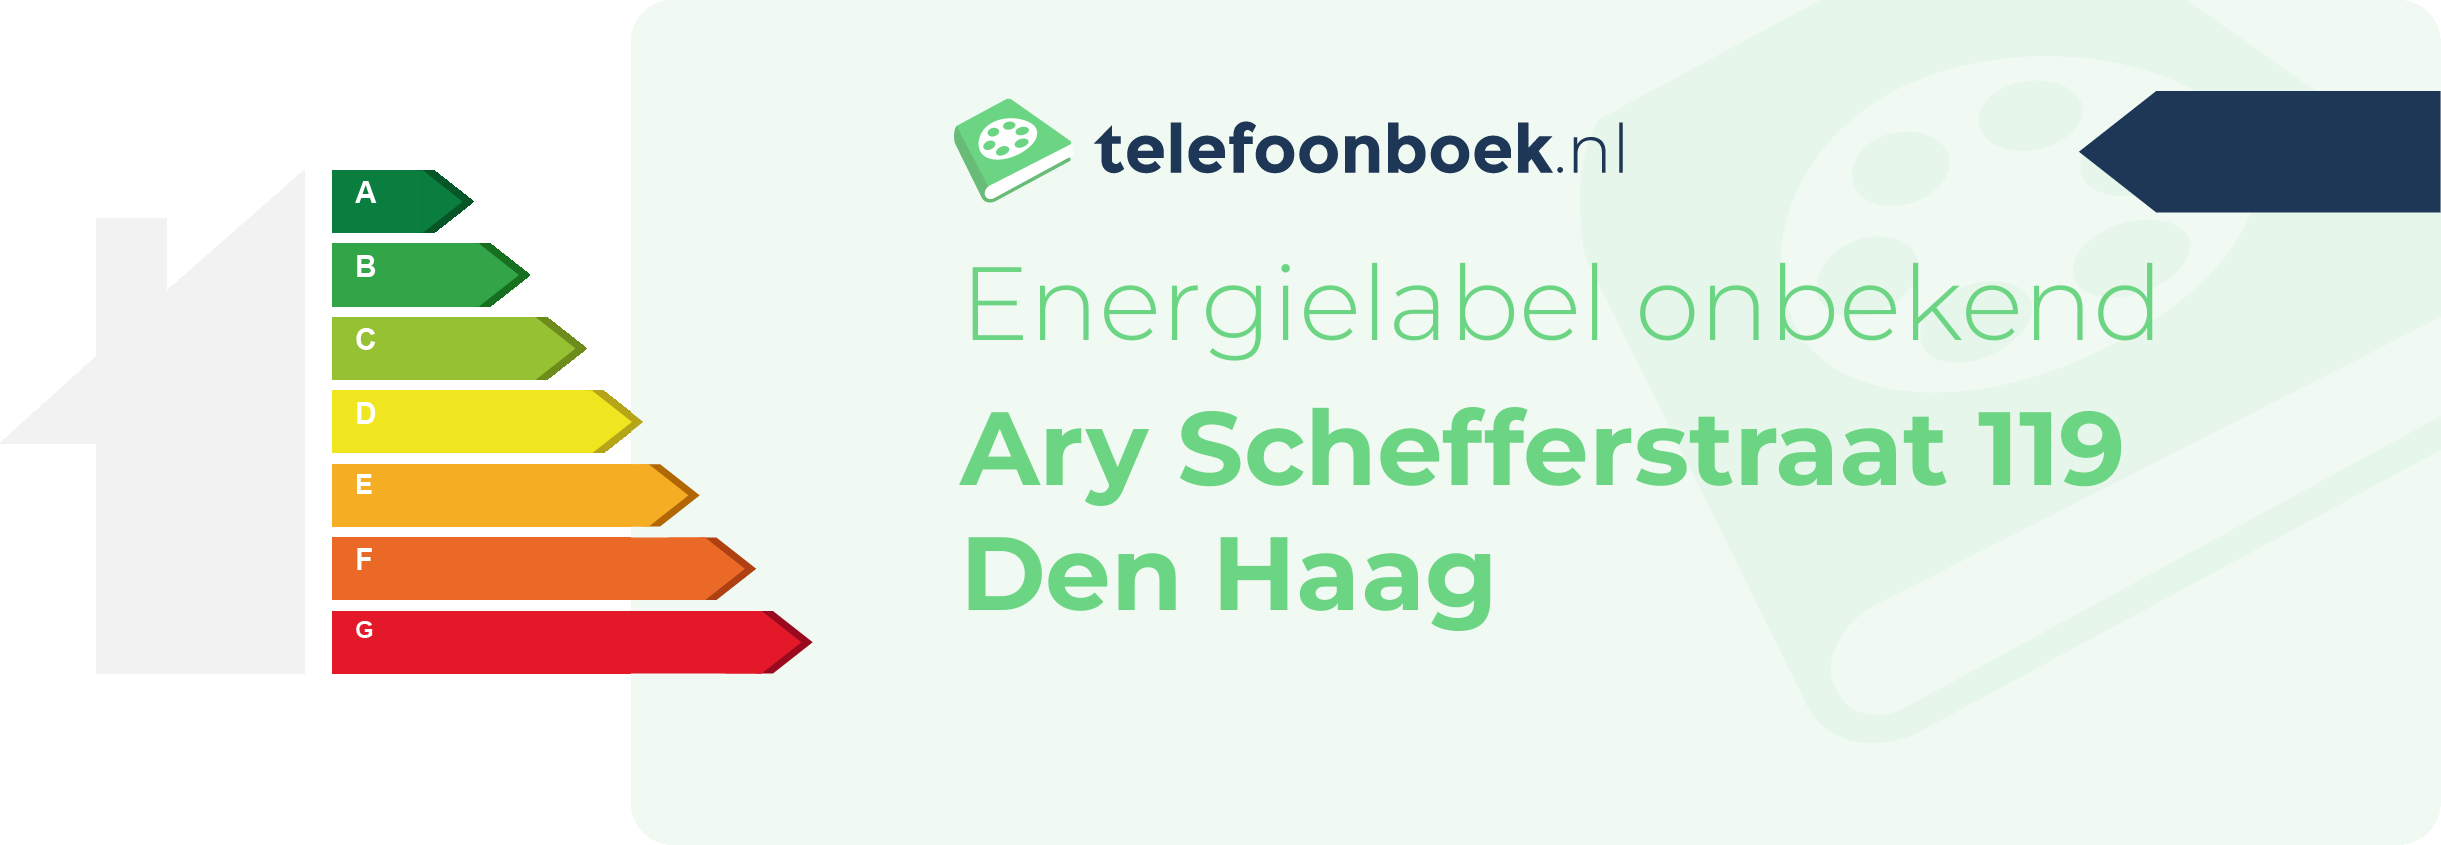 Energielabel Ary Schefferstraat 119 Den Haag